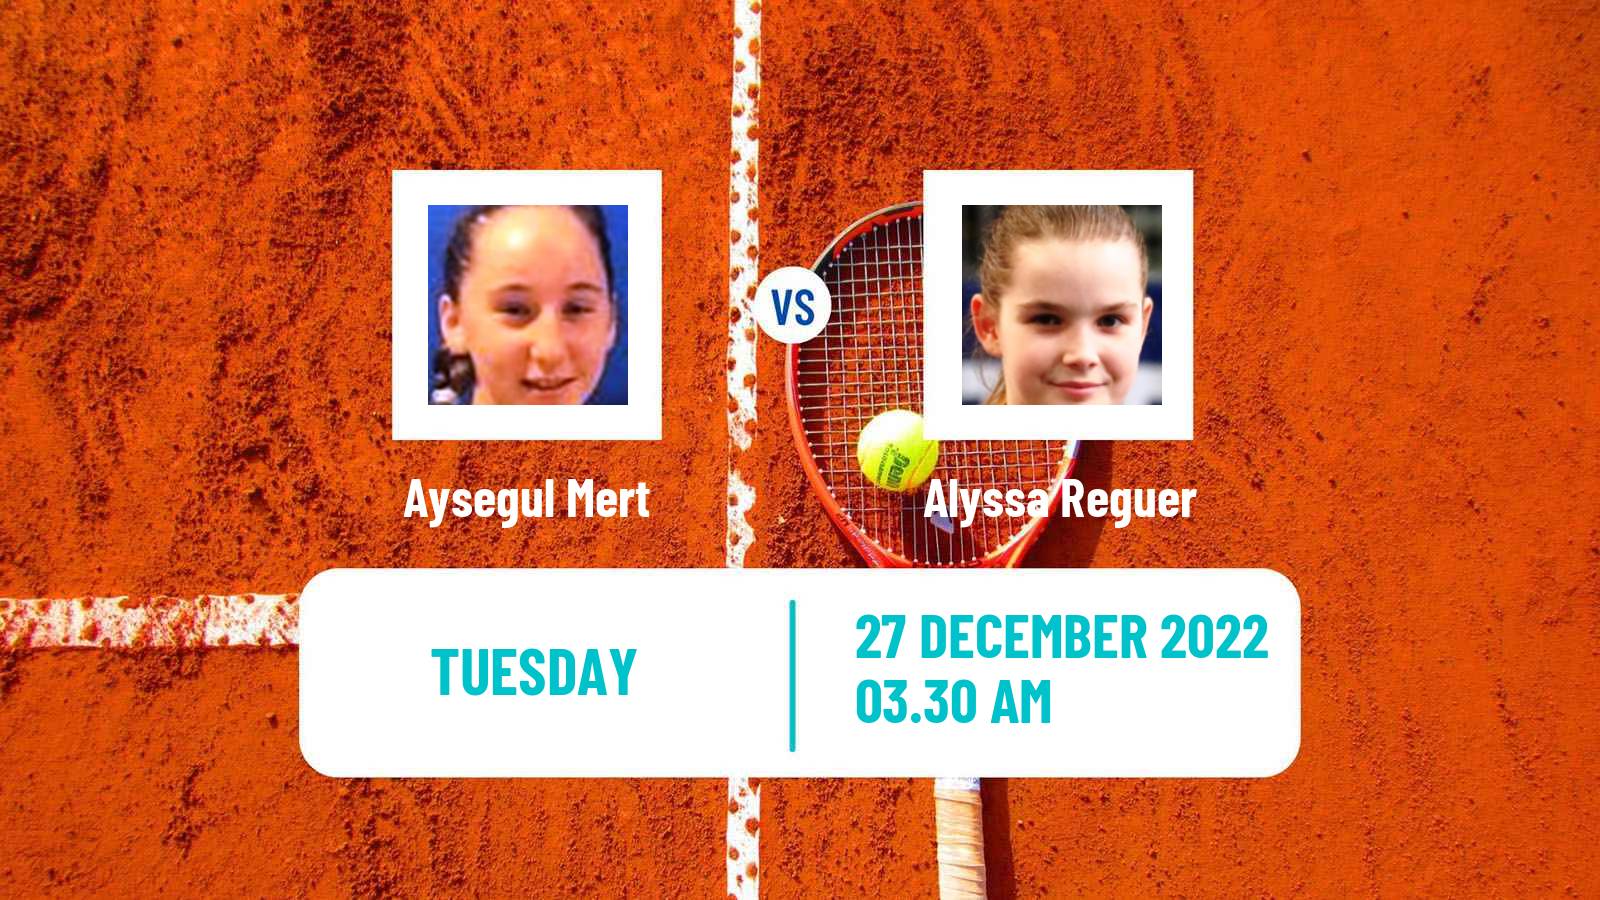 Tennis ITF Tournaments Aysegul Mert - Alyssa Reguer